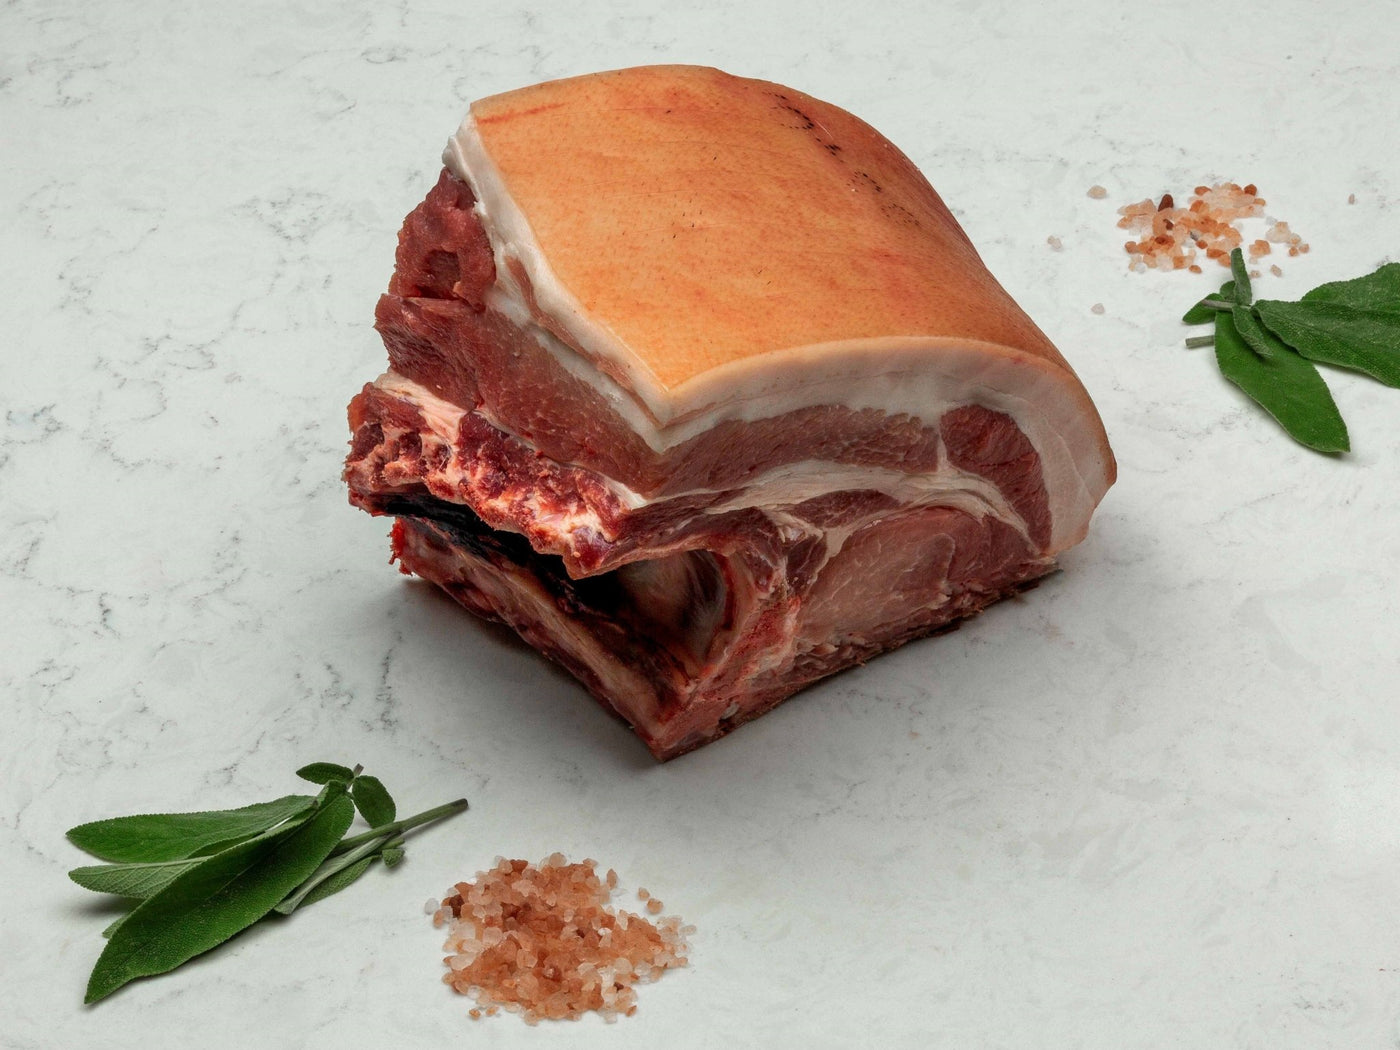 7 Dry-Aged, Free Range Pork Shoulder, Bone In - Boston Butt - Pork - Thomas Joseph Butchery - Ethical Dry-Aged Meat The Best Steak UK Thomas Joseph Butchery